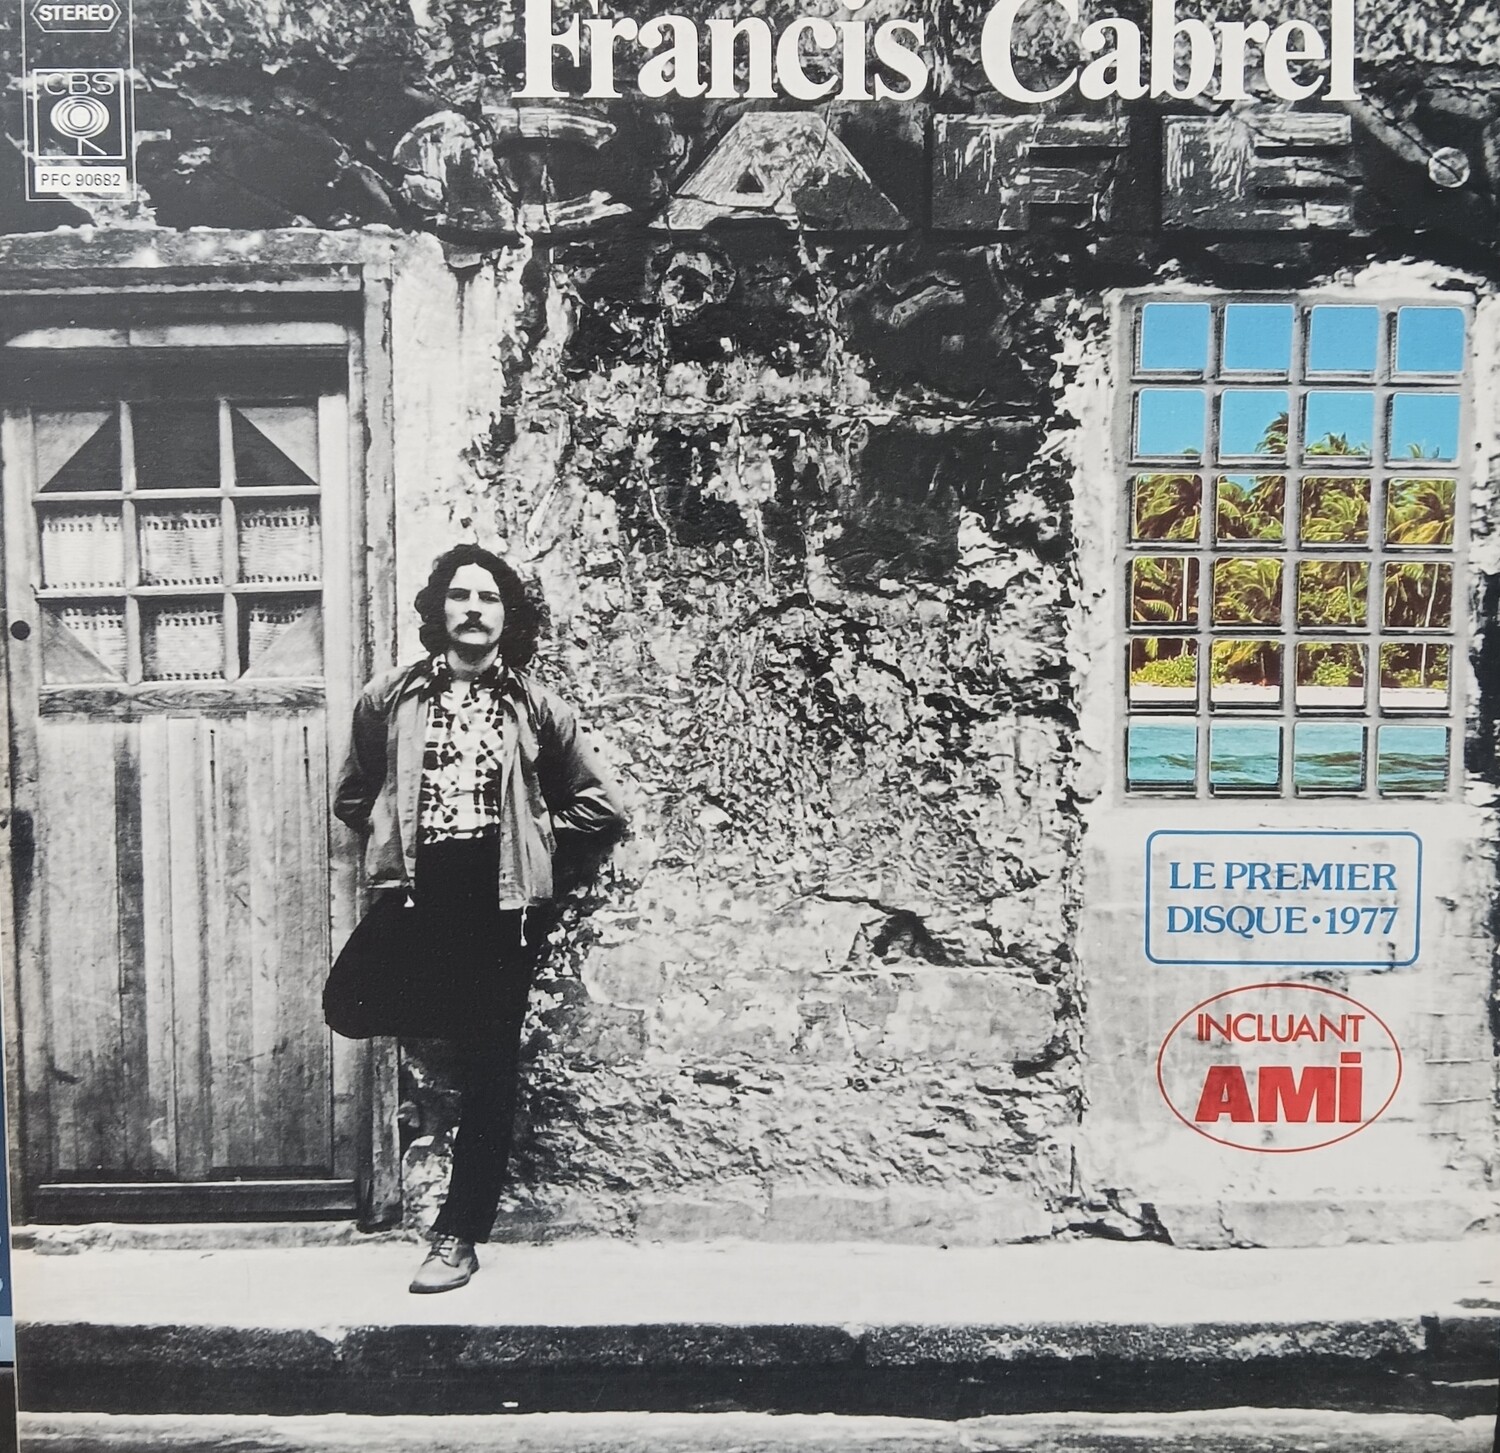 FRANCIS CABREL - Francis Cabrel